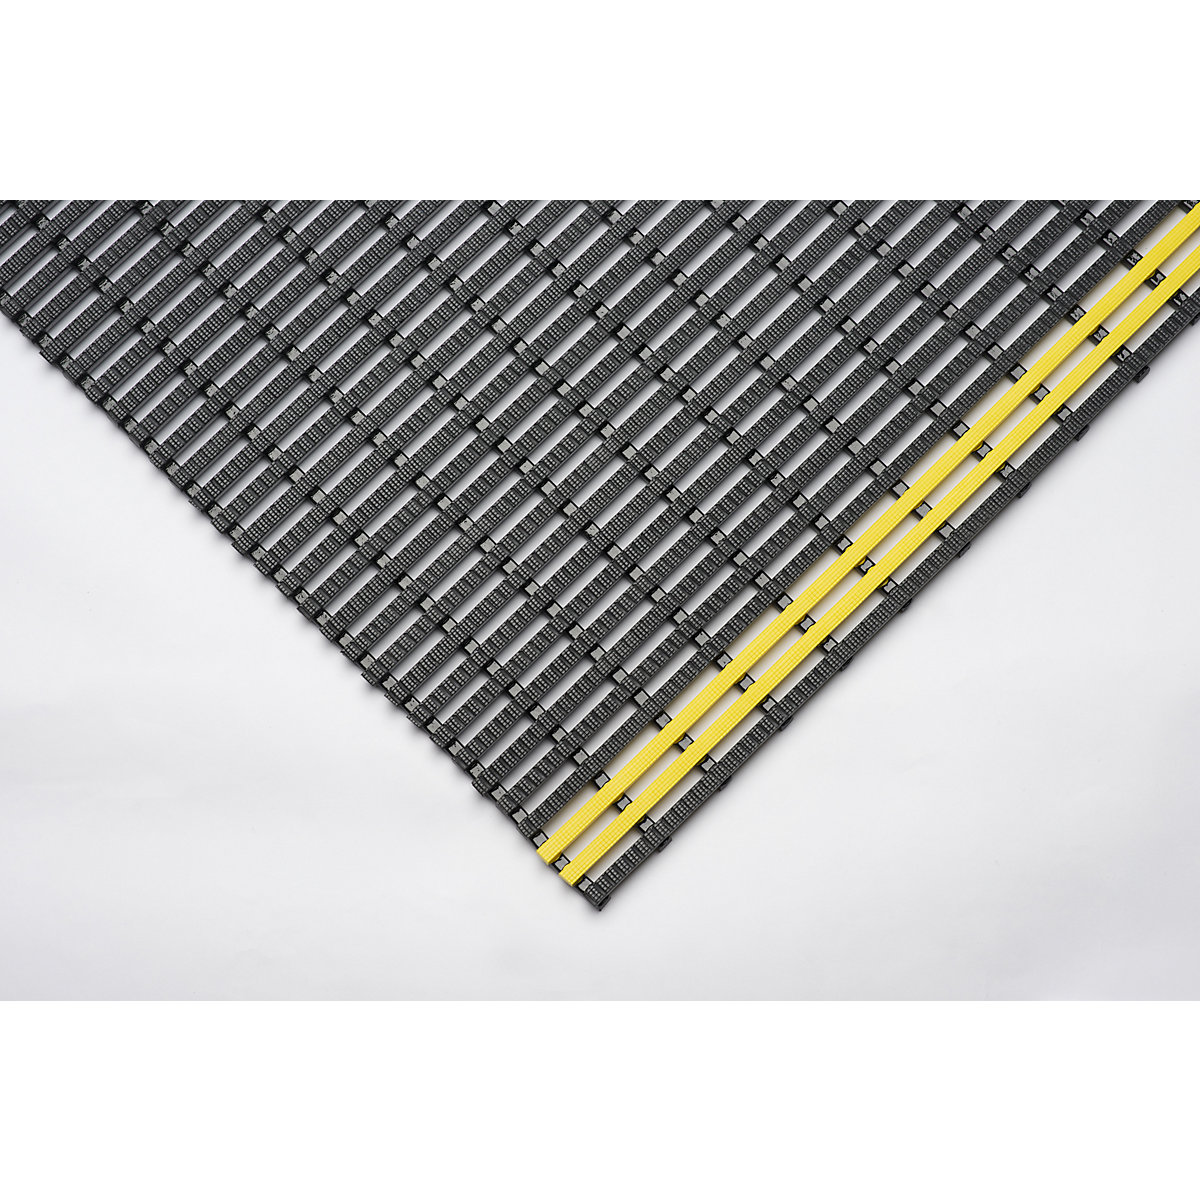 Esteira industrial, antiderrapante, rolo de 10 m, preto/amarelo, largura 600 mm